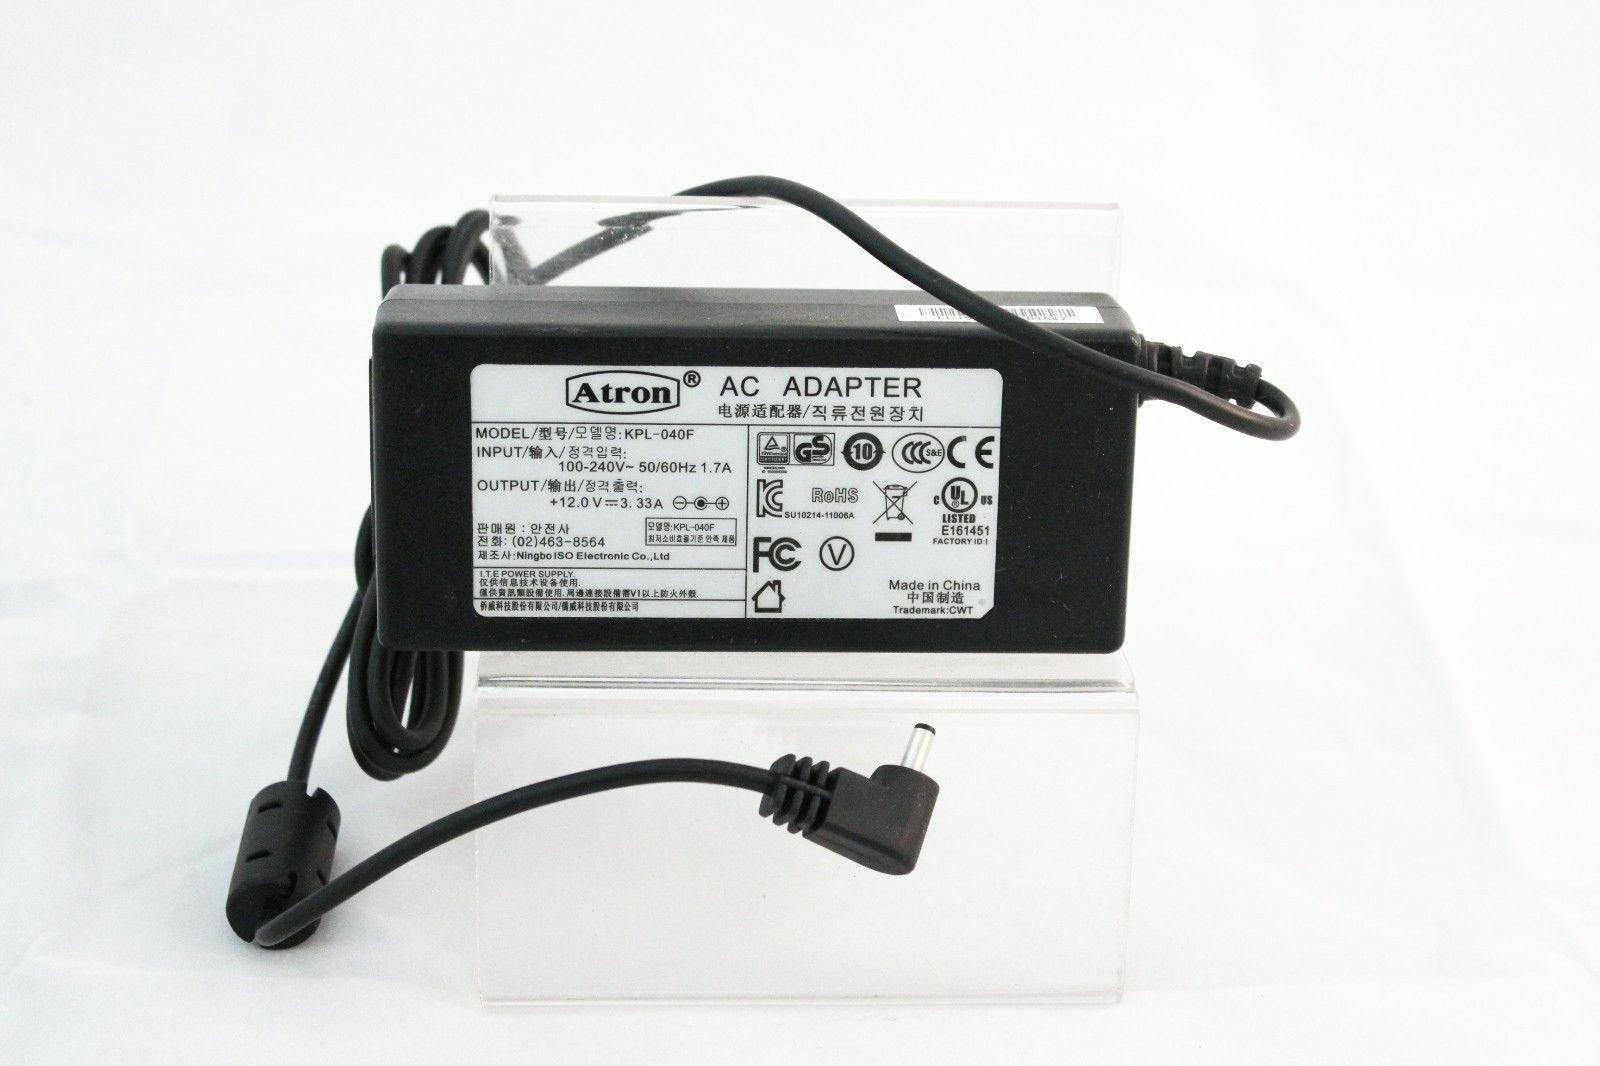 Atron AC POWER ADAPTER KPL-040F 100-240V INPUT 50/60Hz 1.7A OUTPUT +12.0V-3.33A I